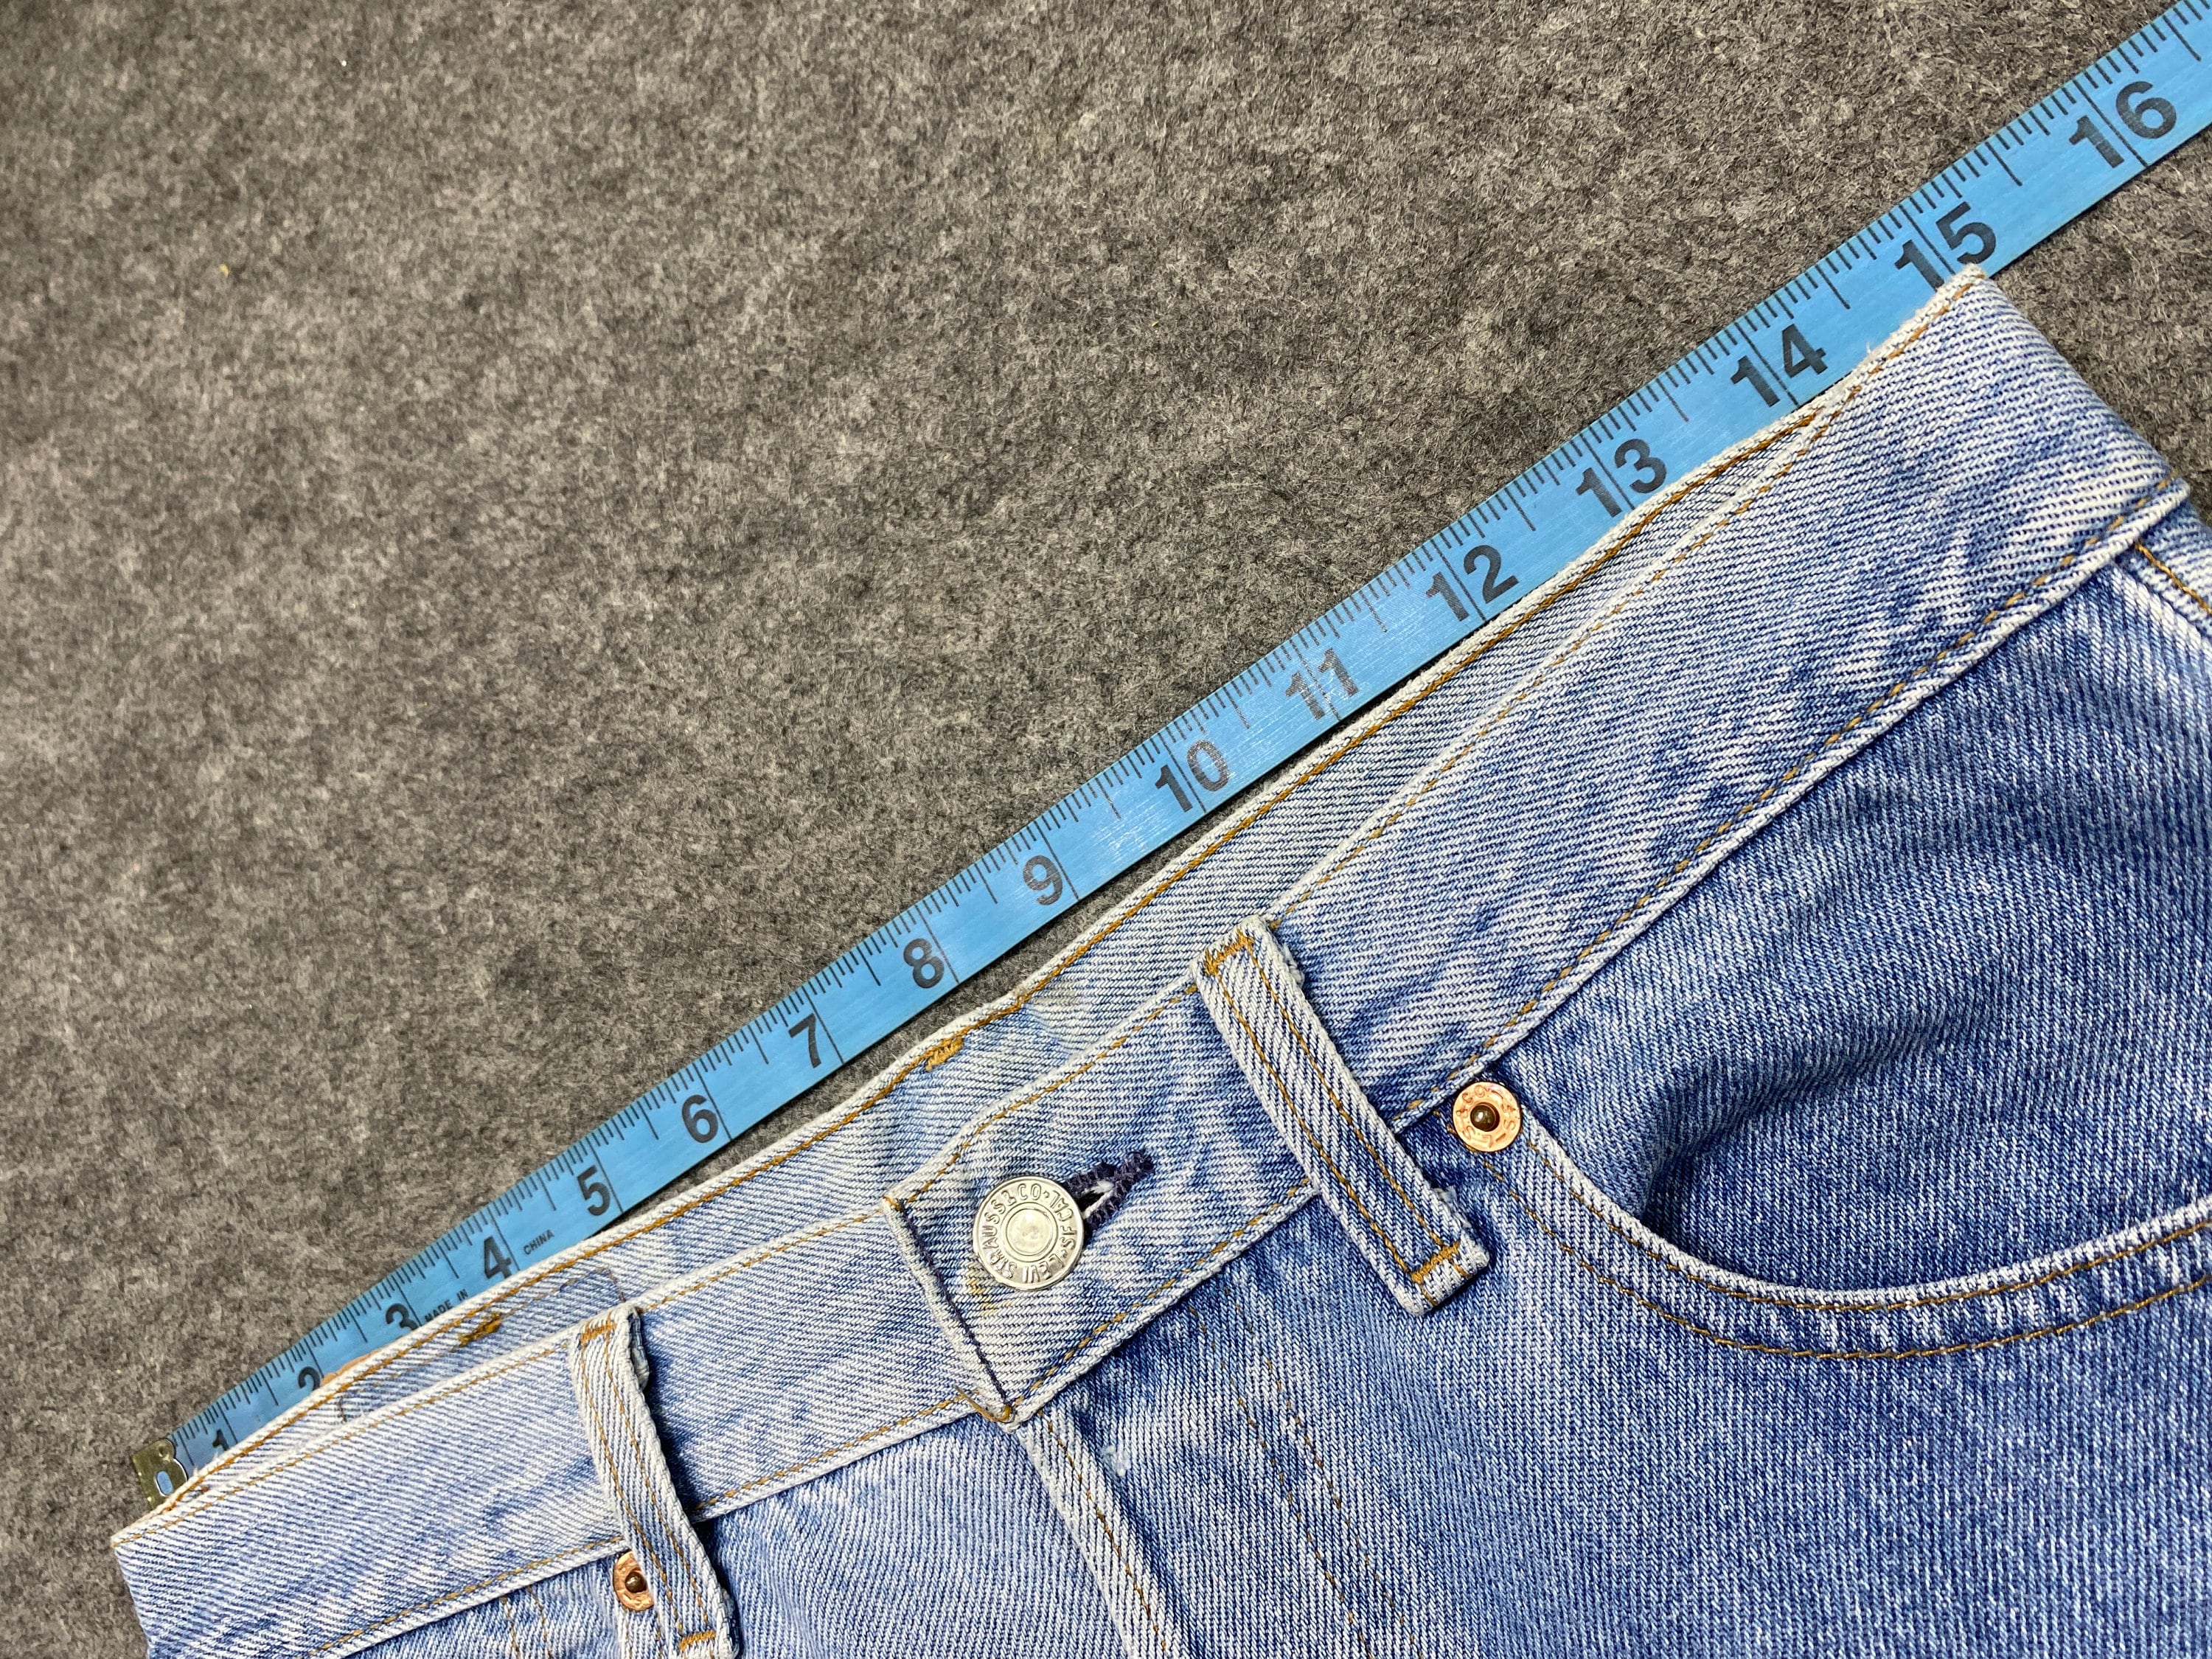 Kleding Gender-neutrale kleding volwassenen Jeans Vintage Levi's 501 Jeans 30x31 Lichtblauw Wash Denim Rood Tab Vervaagd Denim Grunge Stijl Vintage Denim Unisex Jeans 